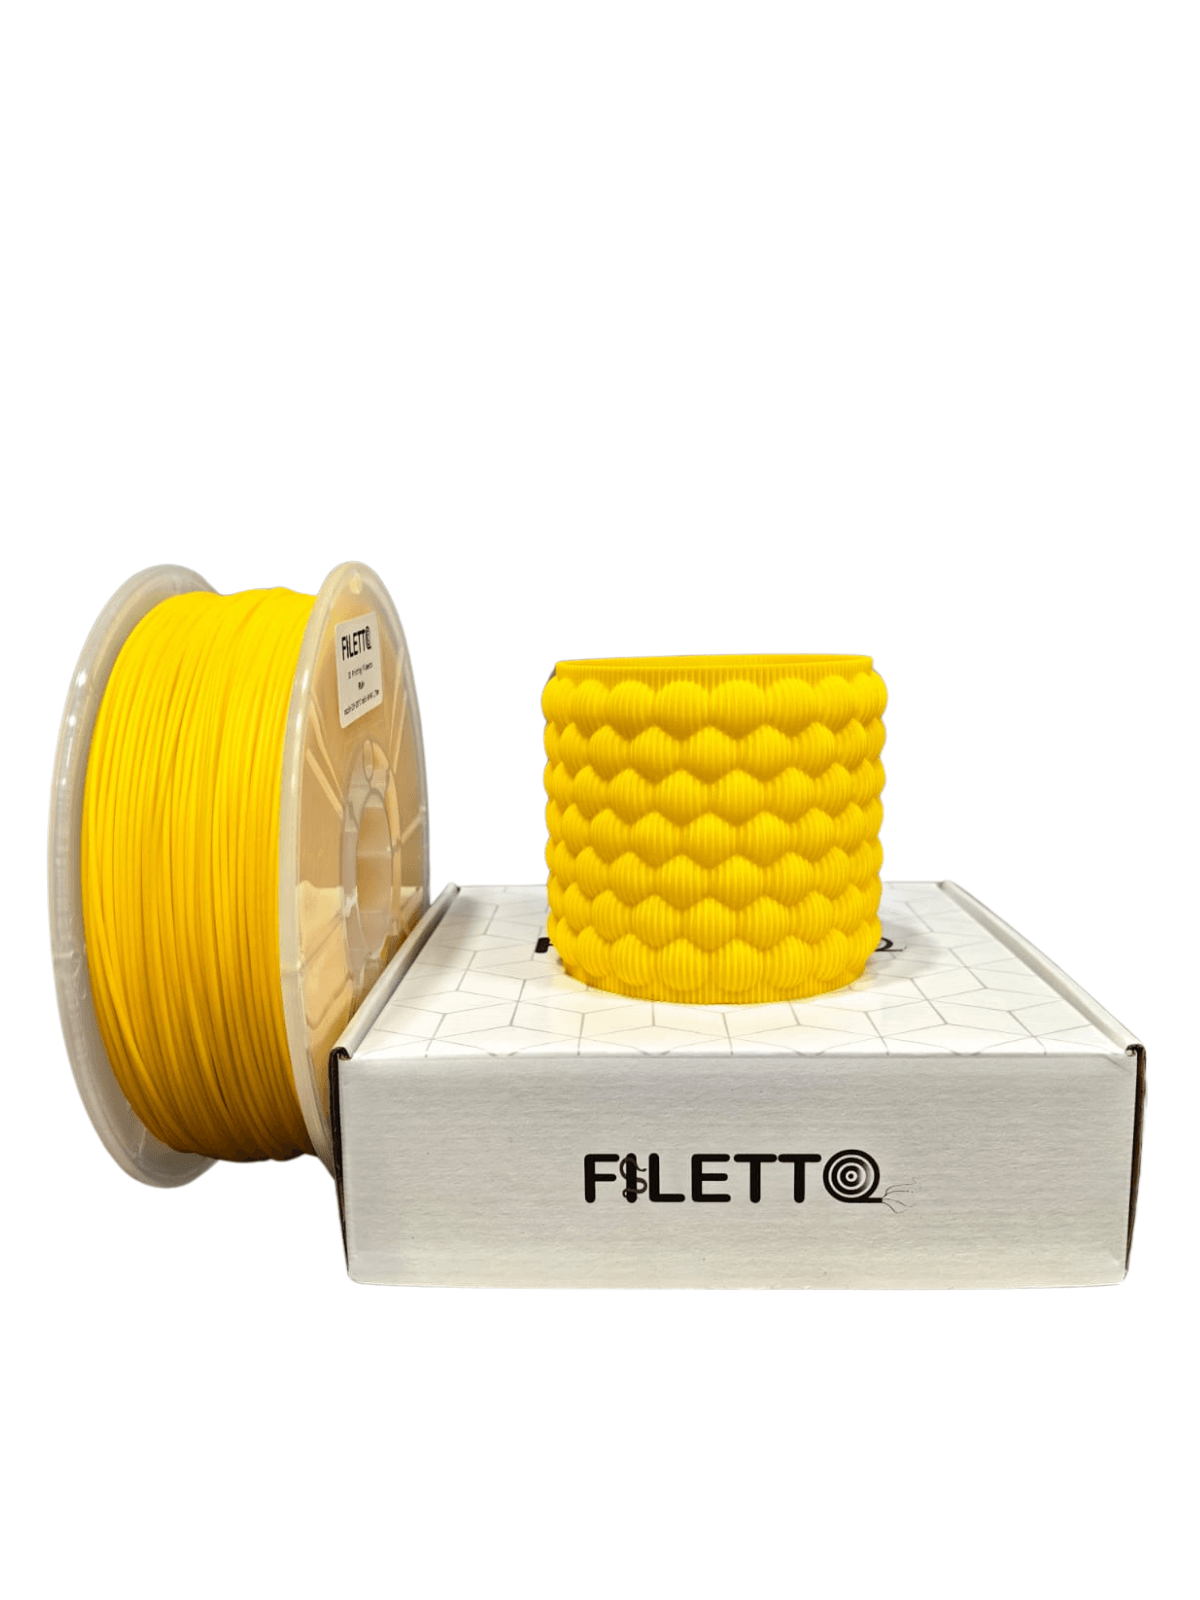 Filetto Pla+ Filament 1.75mm 1KG - Yellow